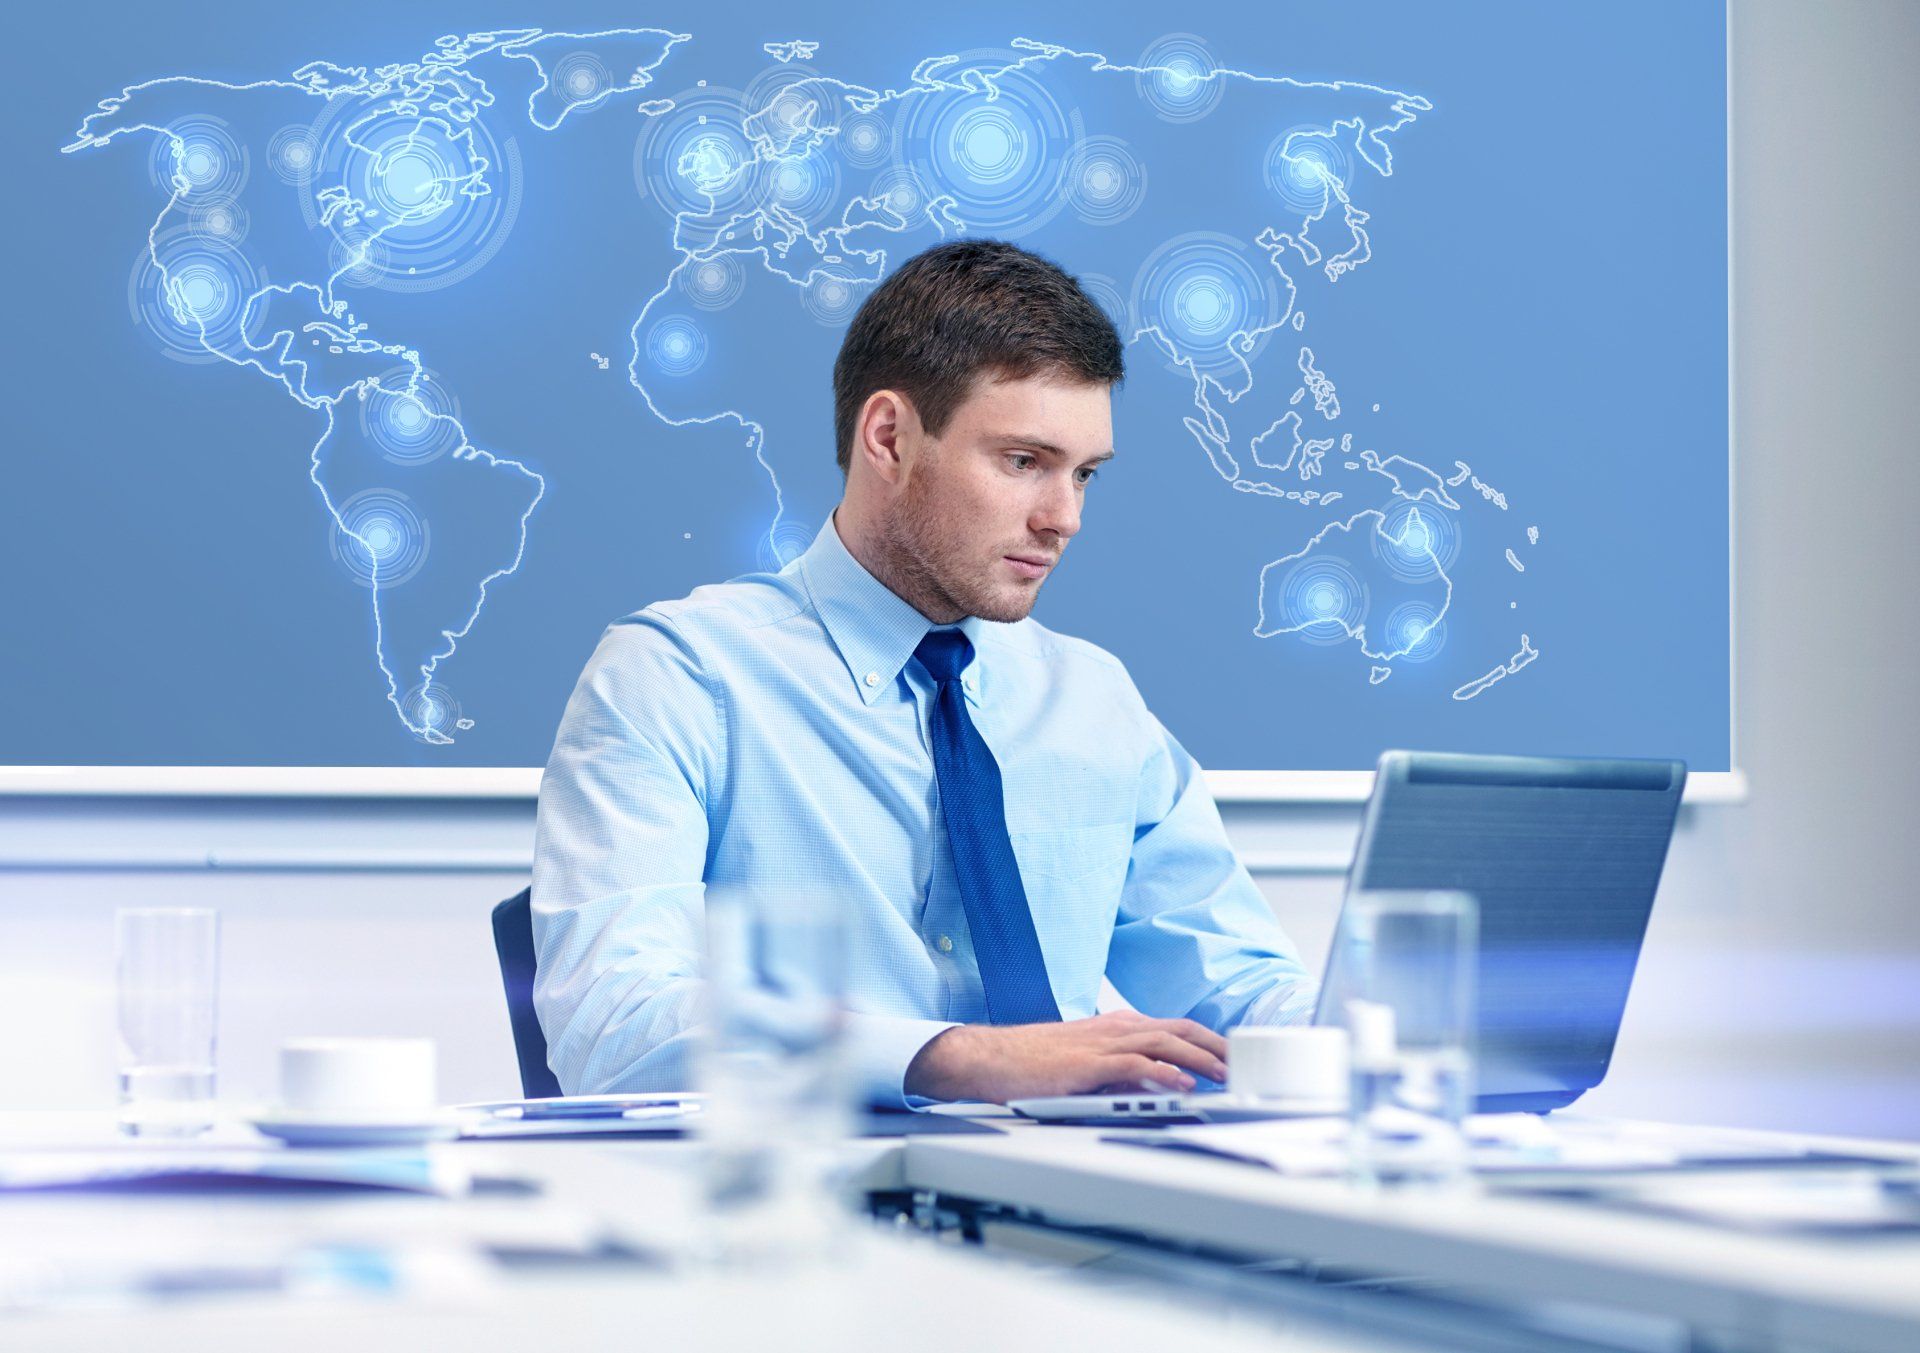 Concepto de negocios, personas y trabajo - hombre de negocios con computadora portátil y mapa del mundo virtual sentado en la oficina